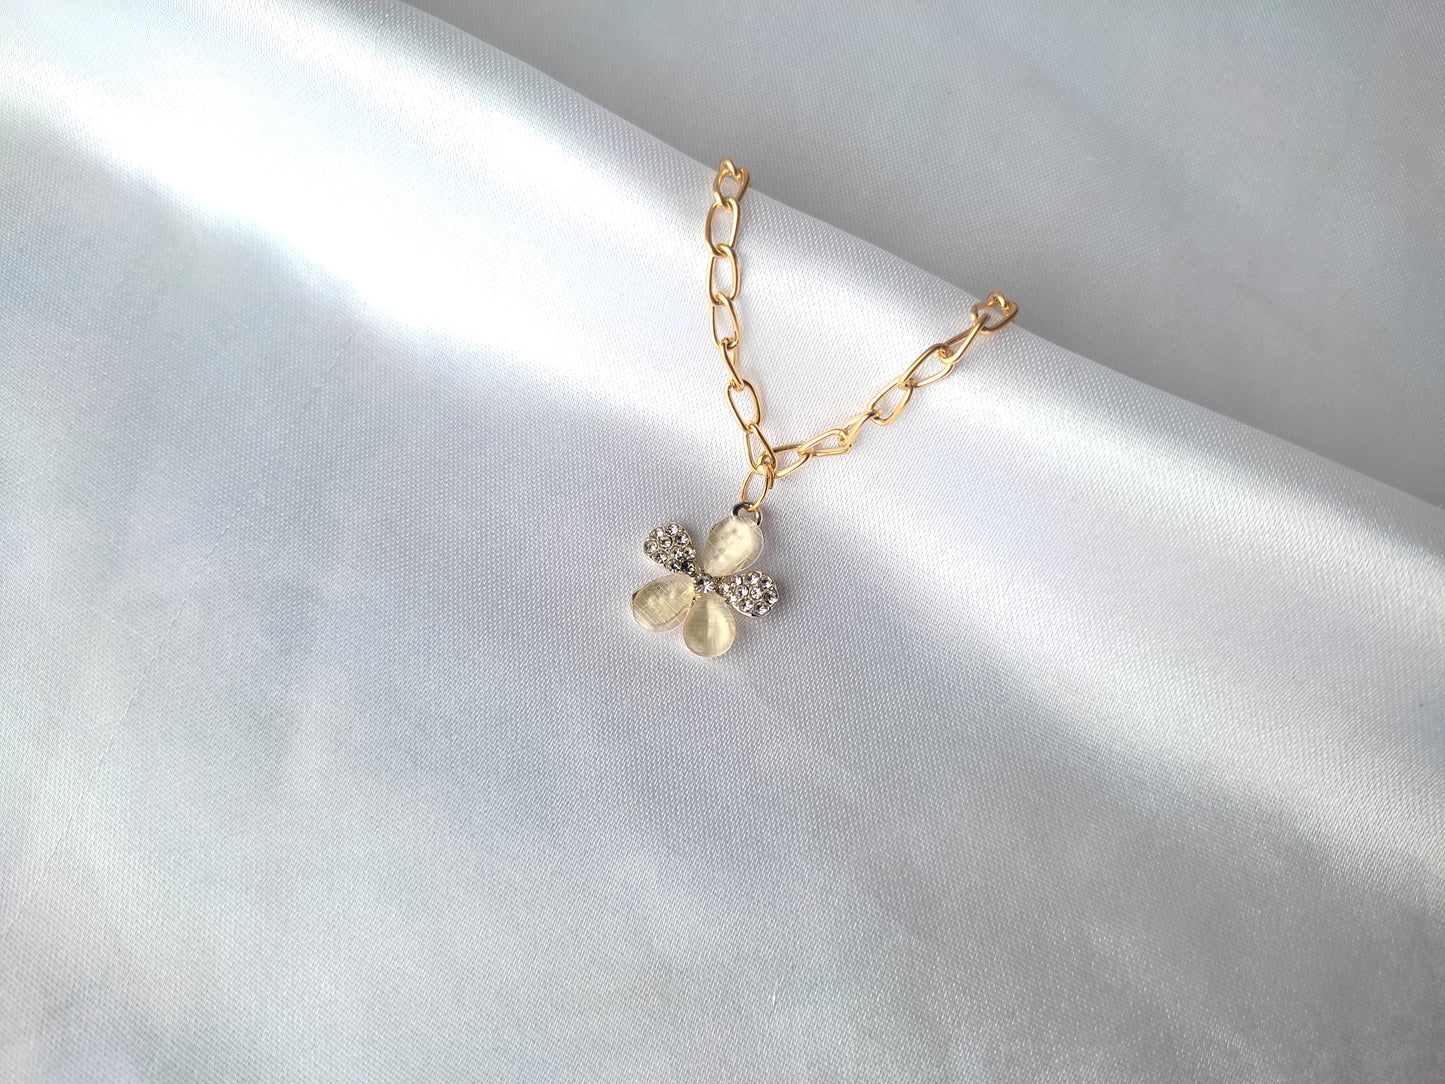 Stylish trendy Gold stoned Flower AD stones charm Korean Chain Bracelet For Women And Girls